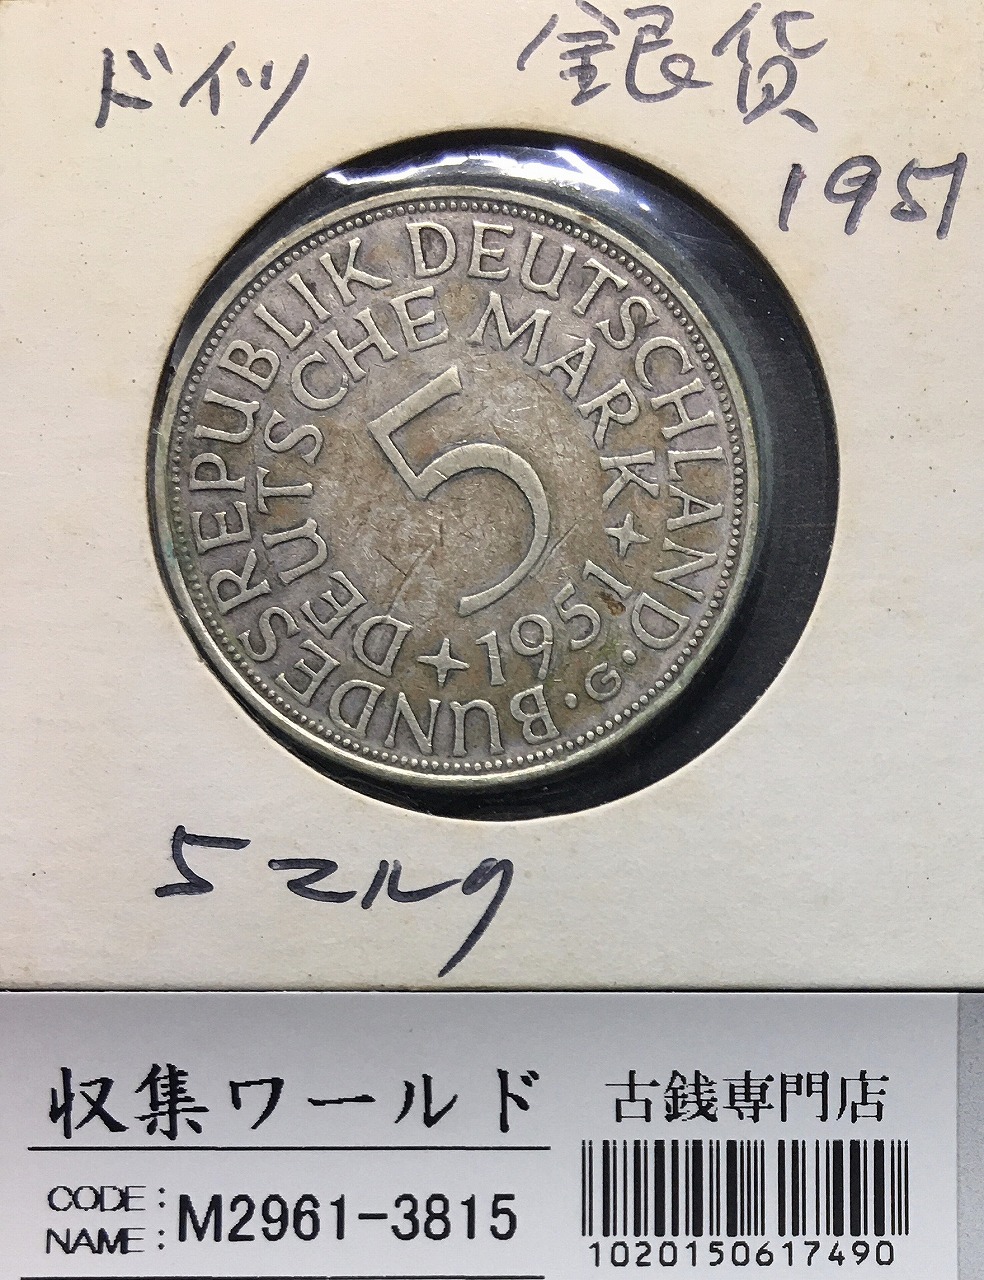 ドイツ 5マルク銀貨 1951年銘 国章/鷲(わし) ミント仕様 量目15.5g 美品